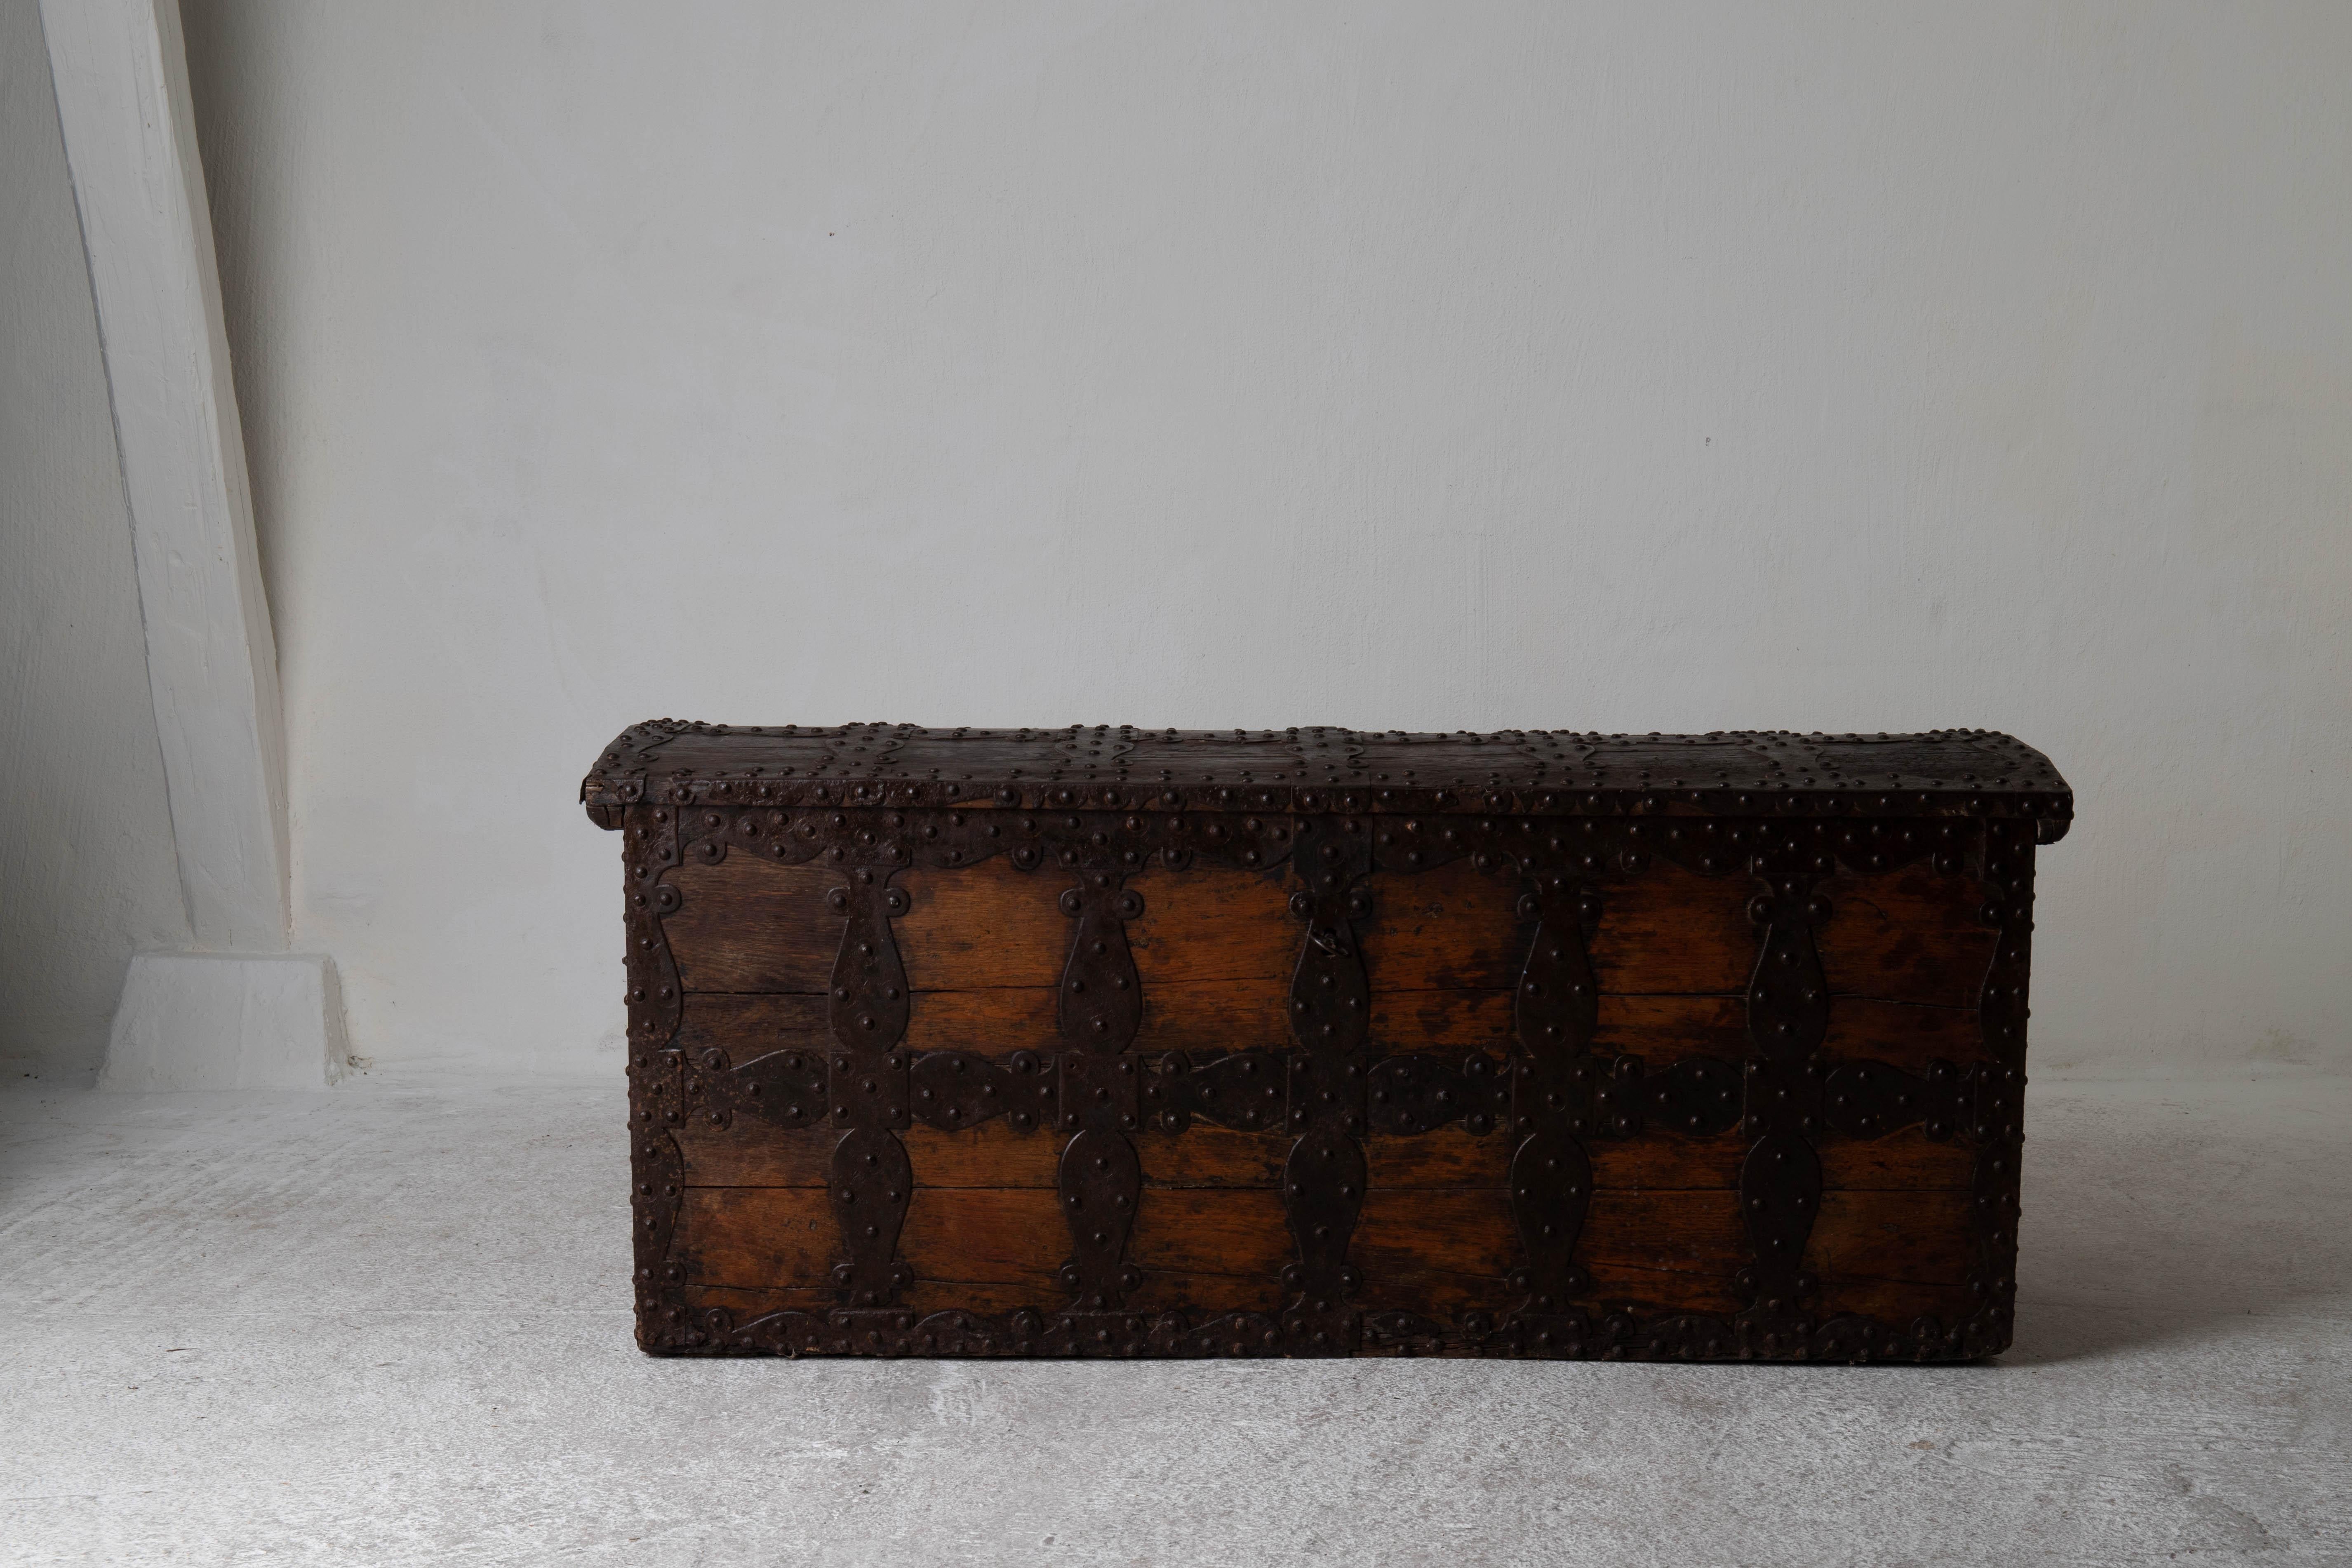 Truhe Decke Italienisch Europa 18. Jahrhundert Holz Eisen Italien. Deckentruhe aus dem 18. Jahrhundert in Europa. Verziert mit Metall und abgerundeten Nagelköpfen. Ursprünglicher Zustand.

 